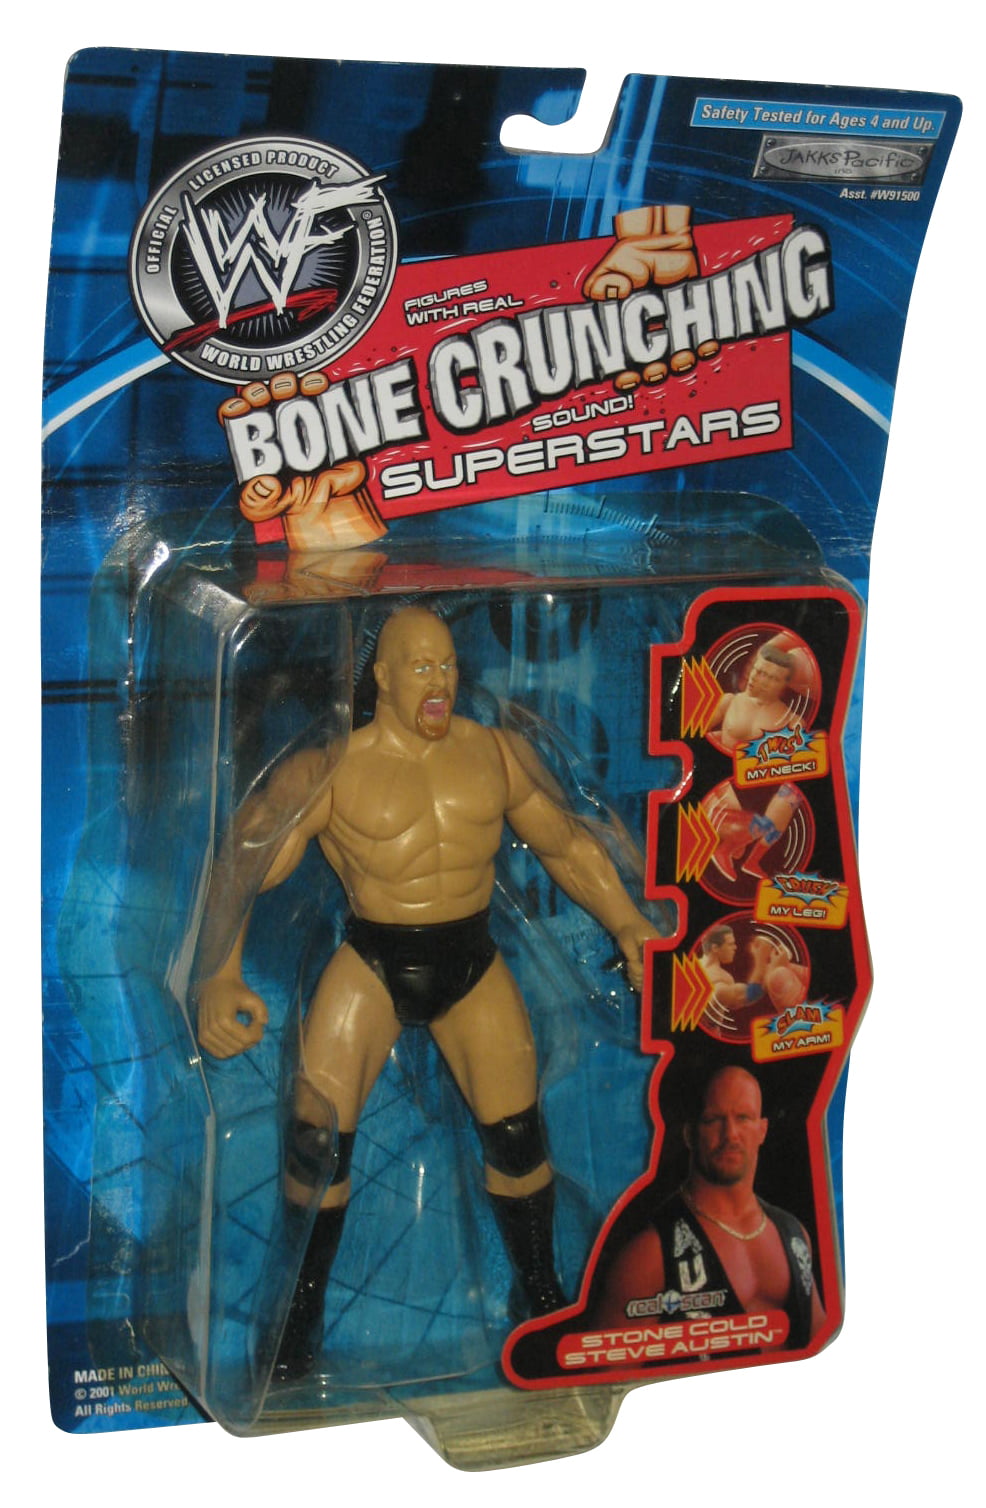 WWF Bad Boys Stone Cold Steve Austin OS Crunching Wrestling Figure ~ Neuf sous emballage 